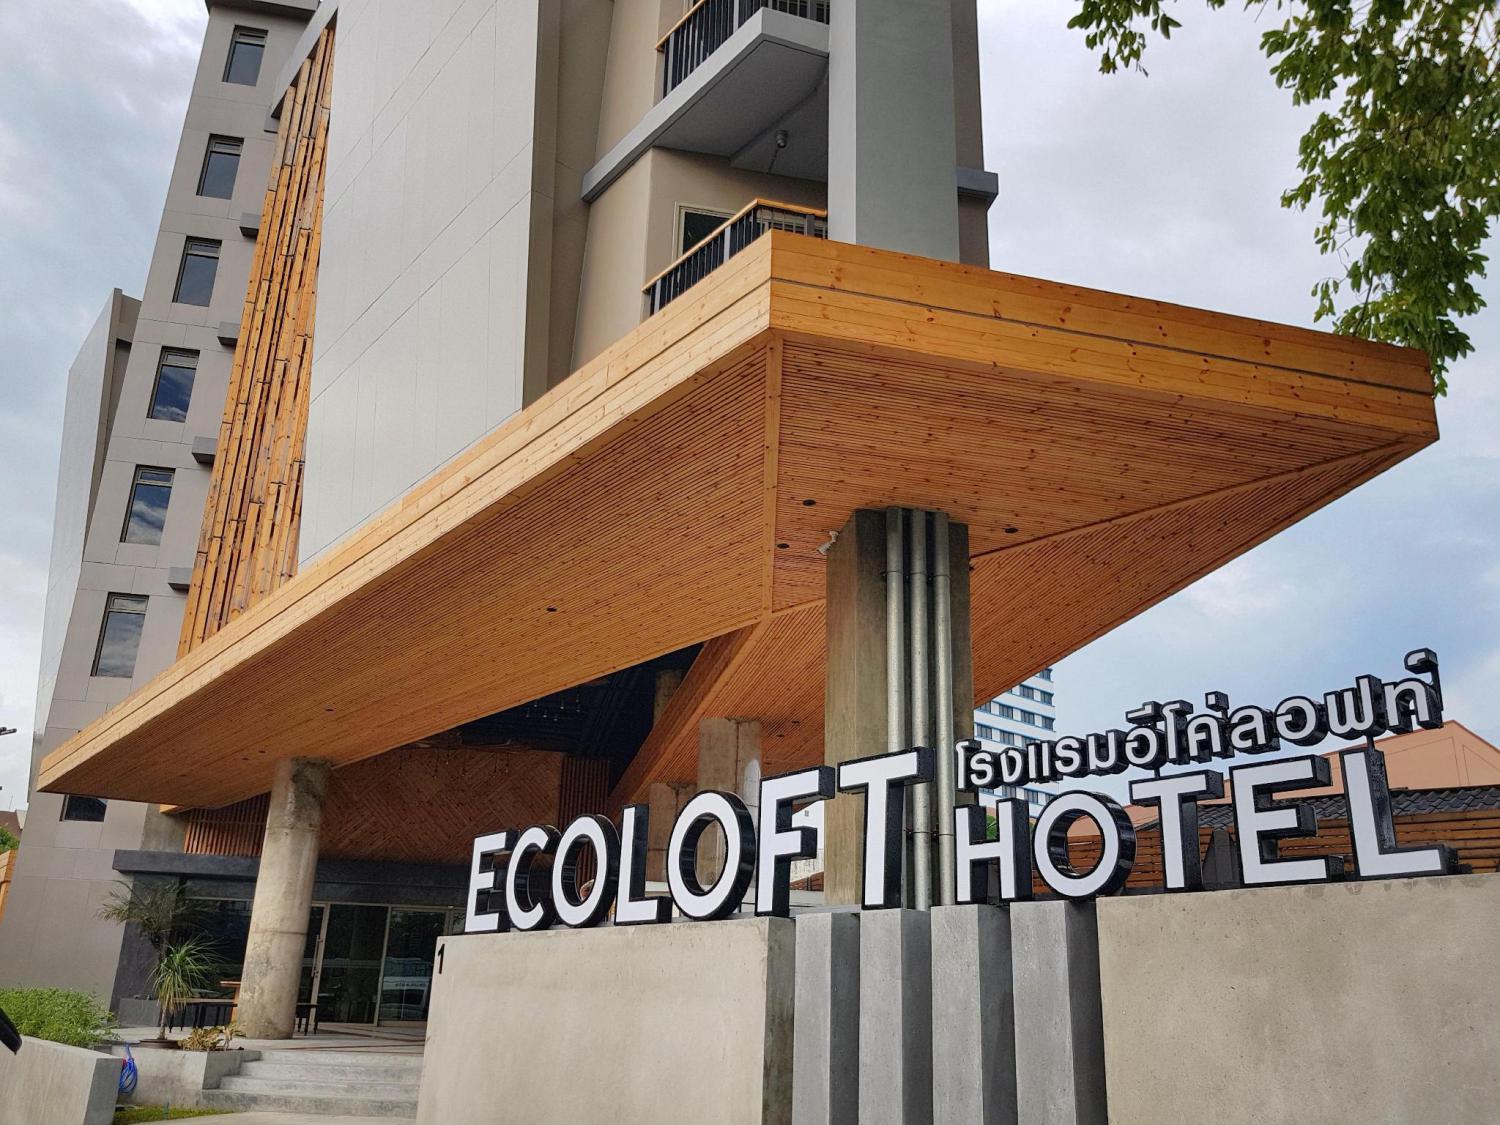 EcoLoft Hotel - Image 0